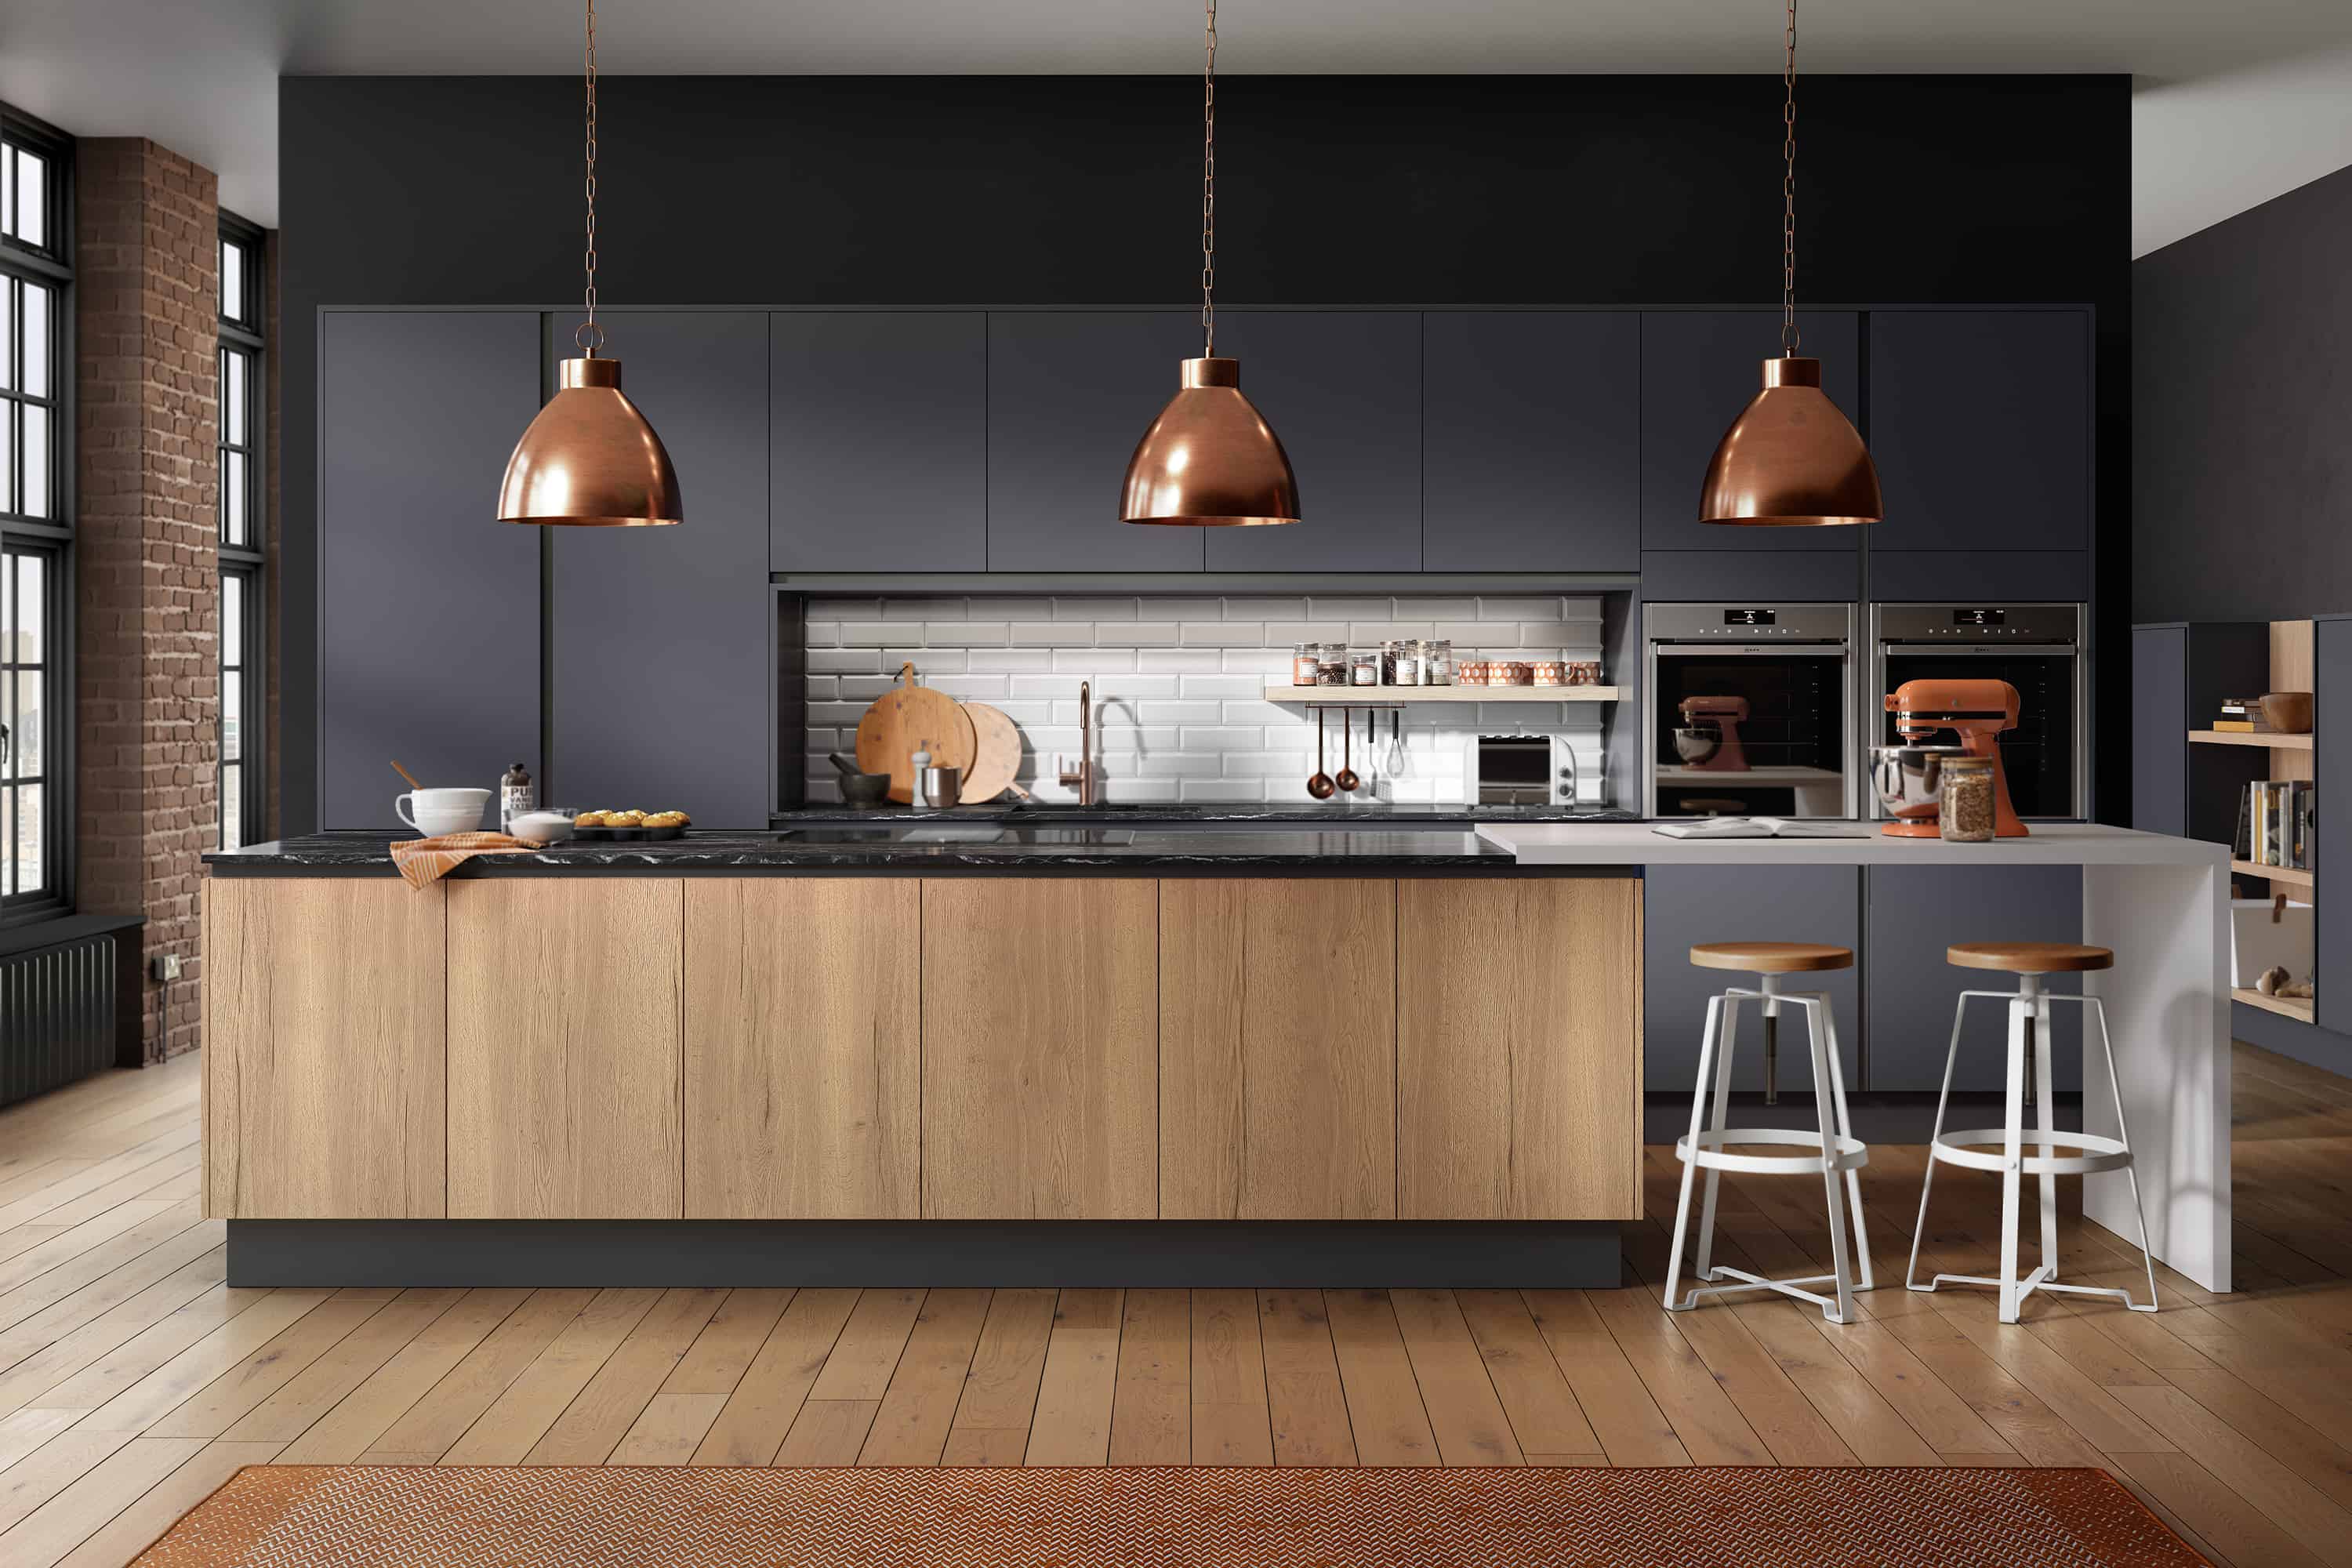 kitchen design ideas uk Modern & contemporary kitchen designs & ideas